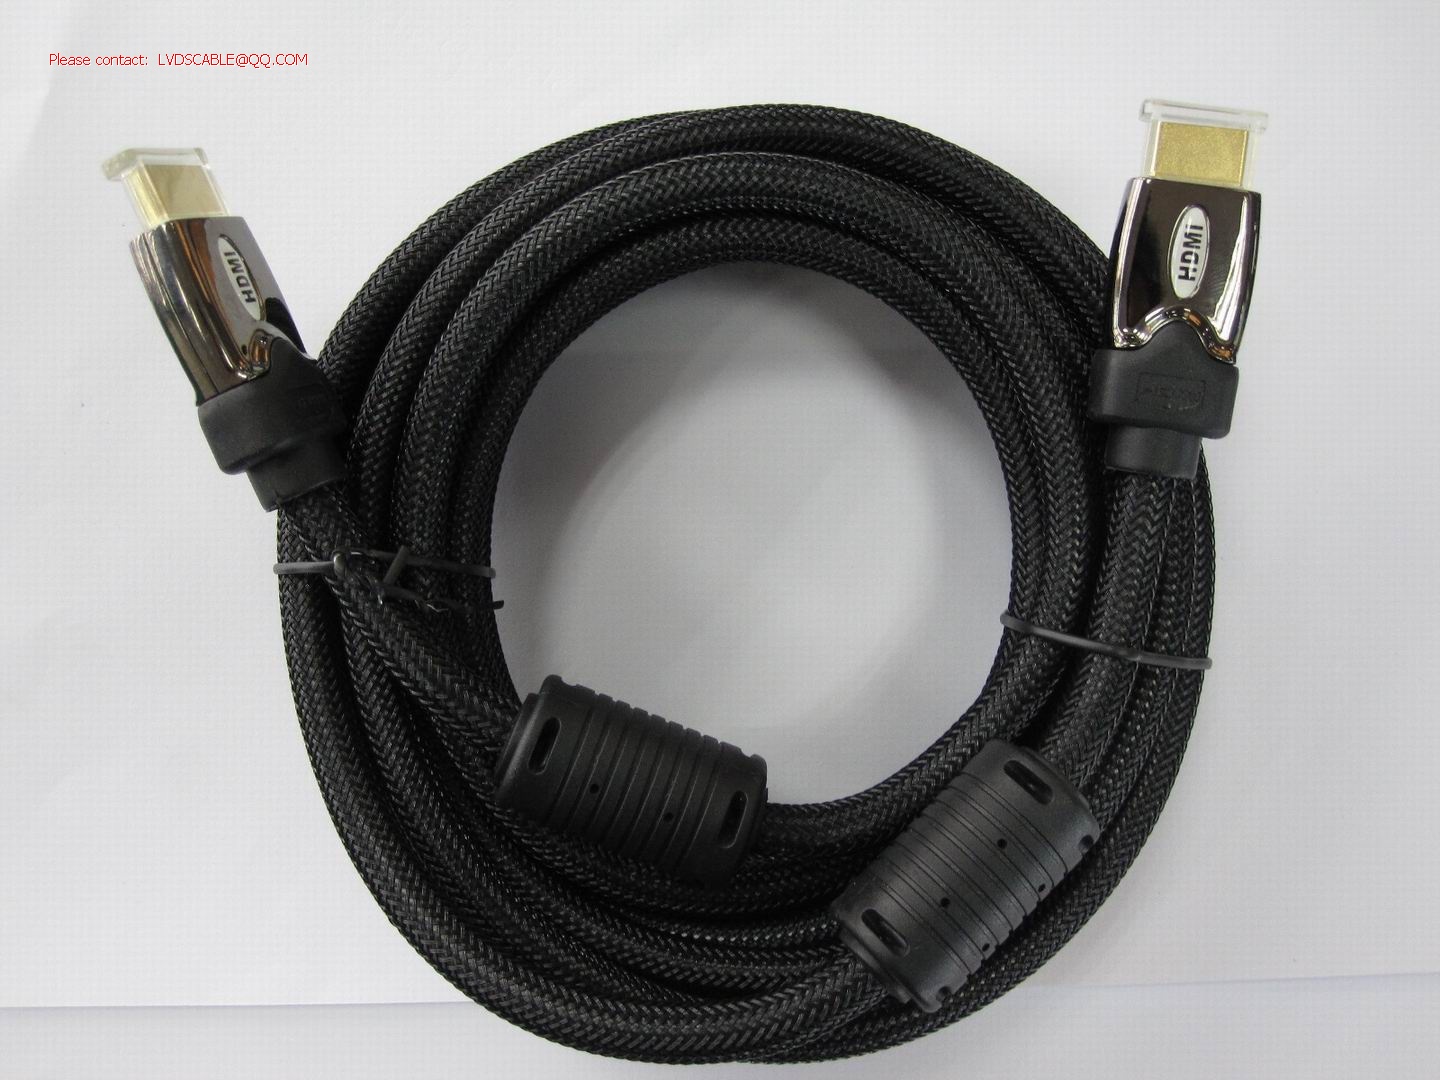 装配式HDMI,HDMIi转接头,HDMI 线定制,HDMI连接器,1.4版HDMI高清播放器照相机摄相机数据连接线